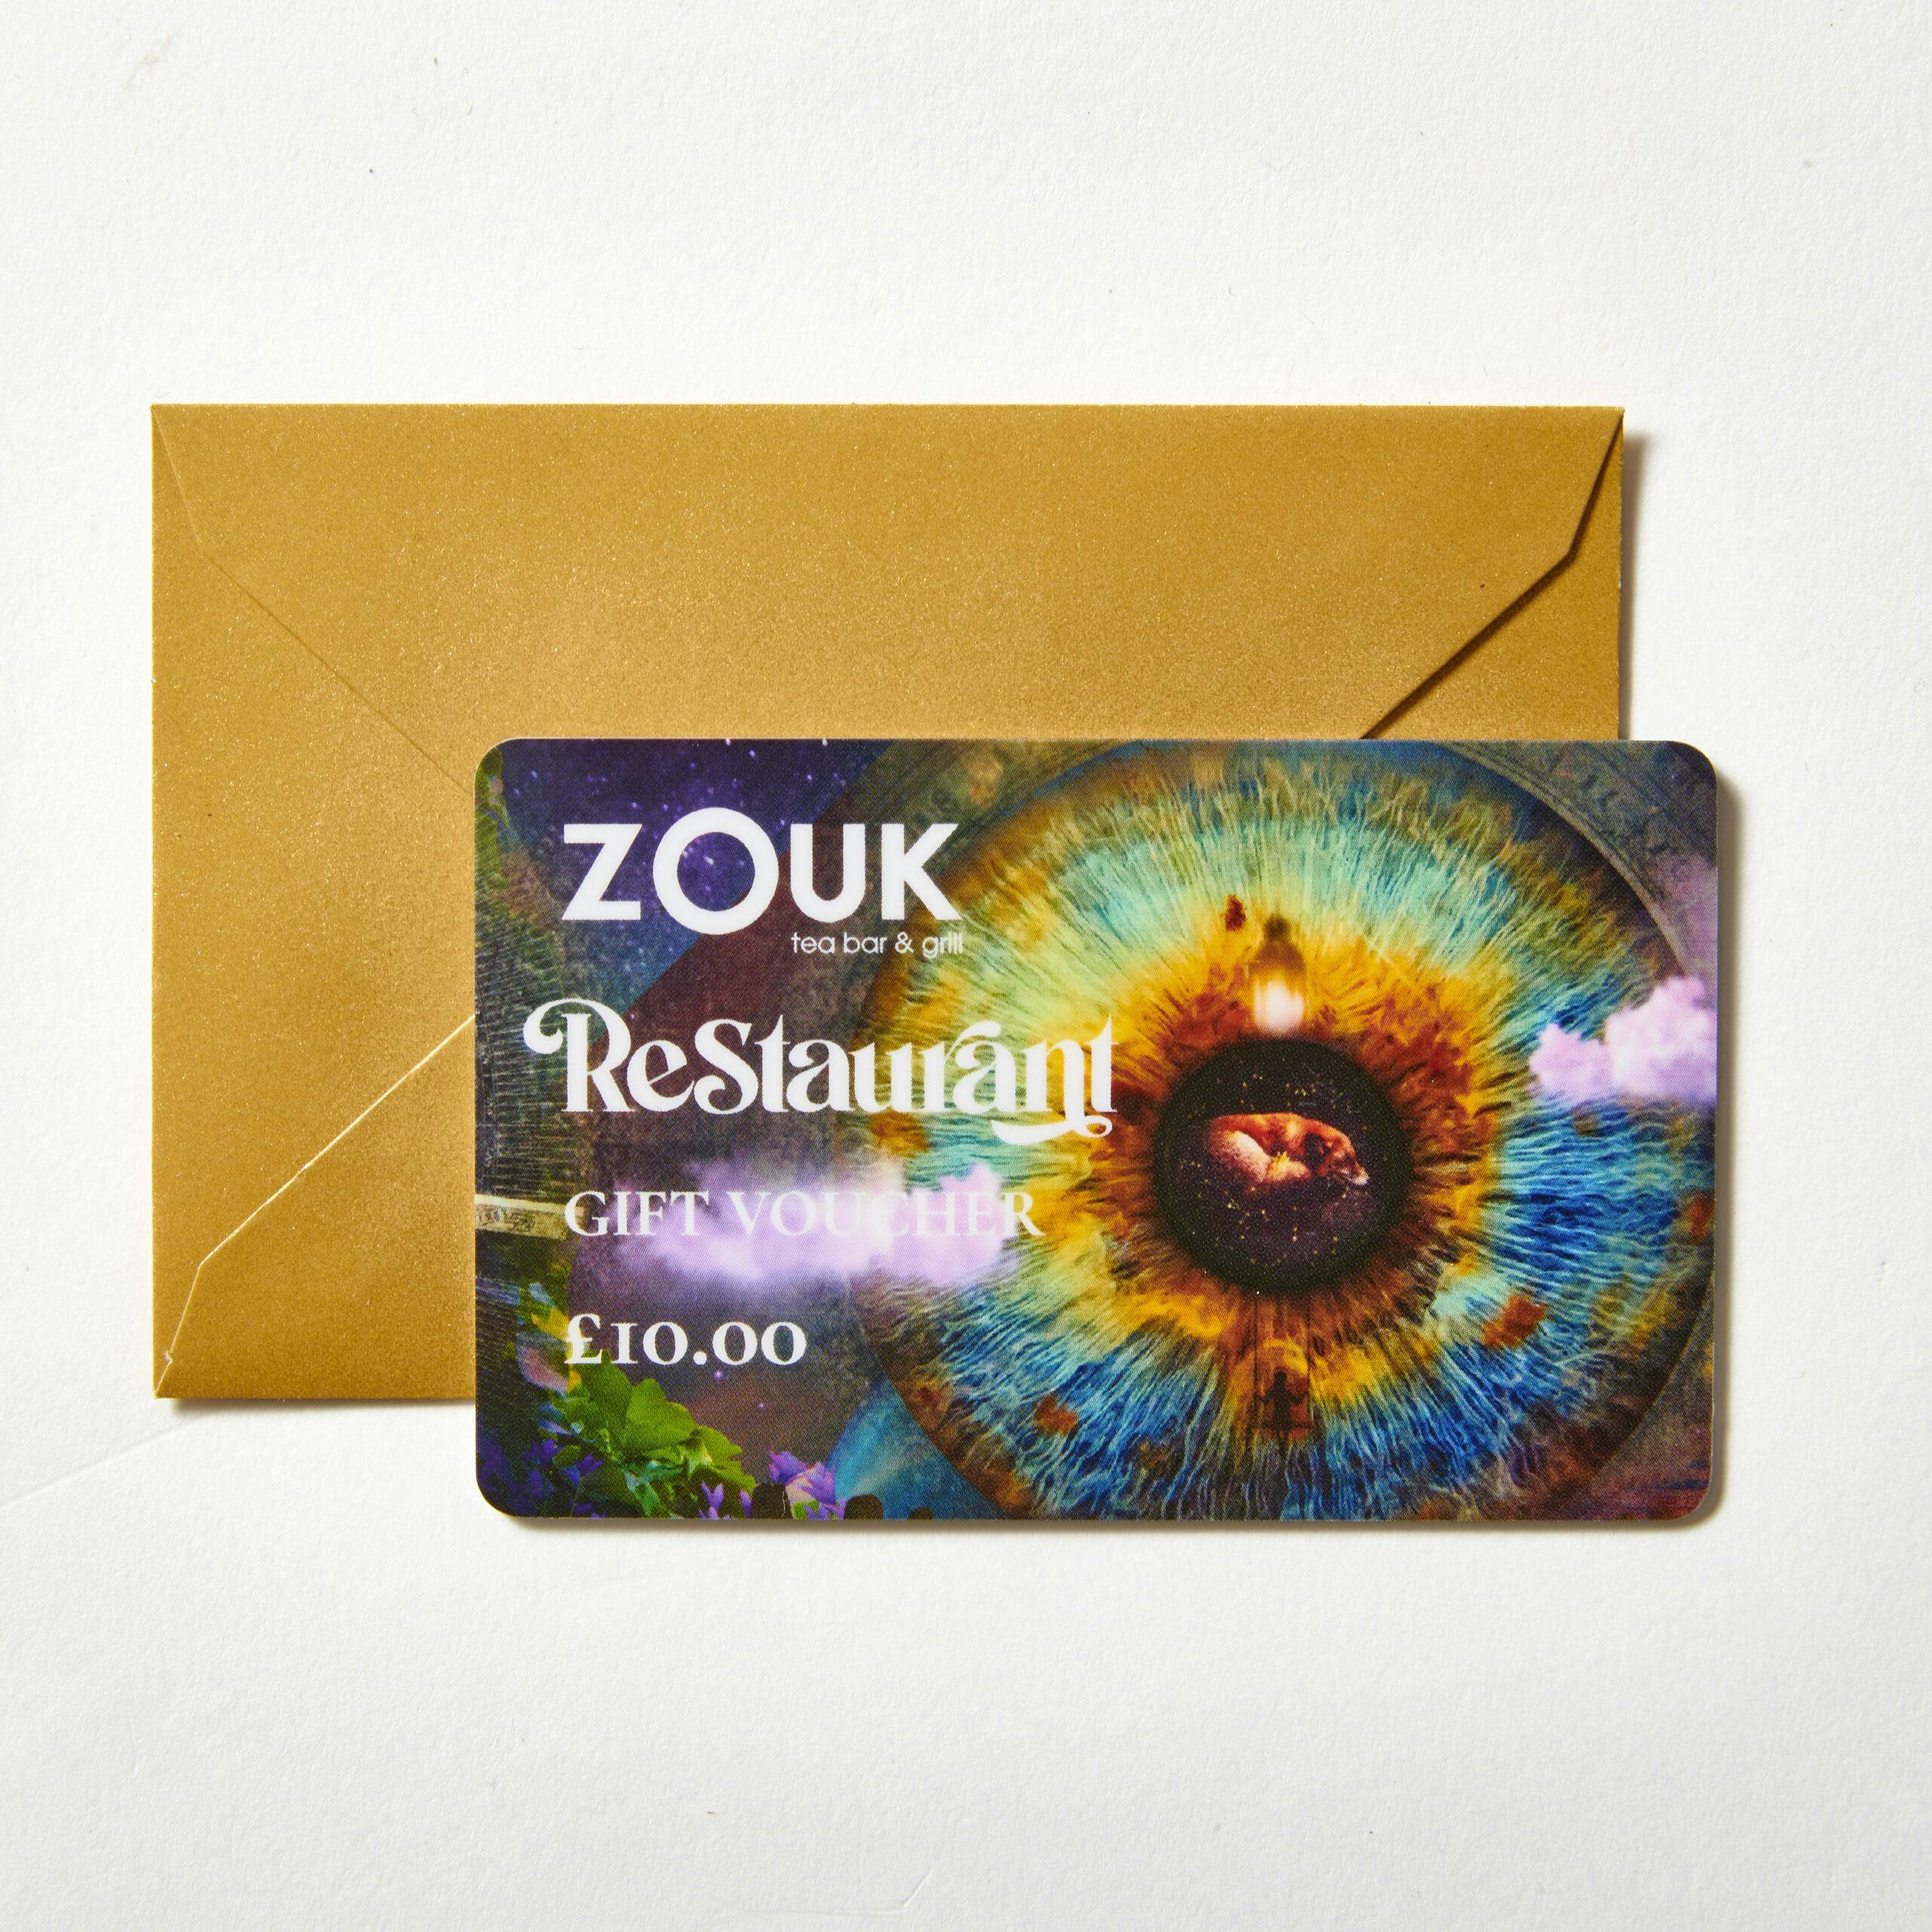 Zouk Restaurant Gift Card £10